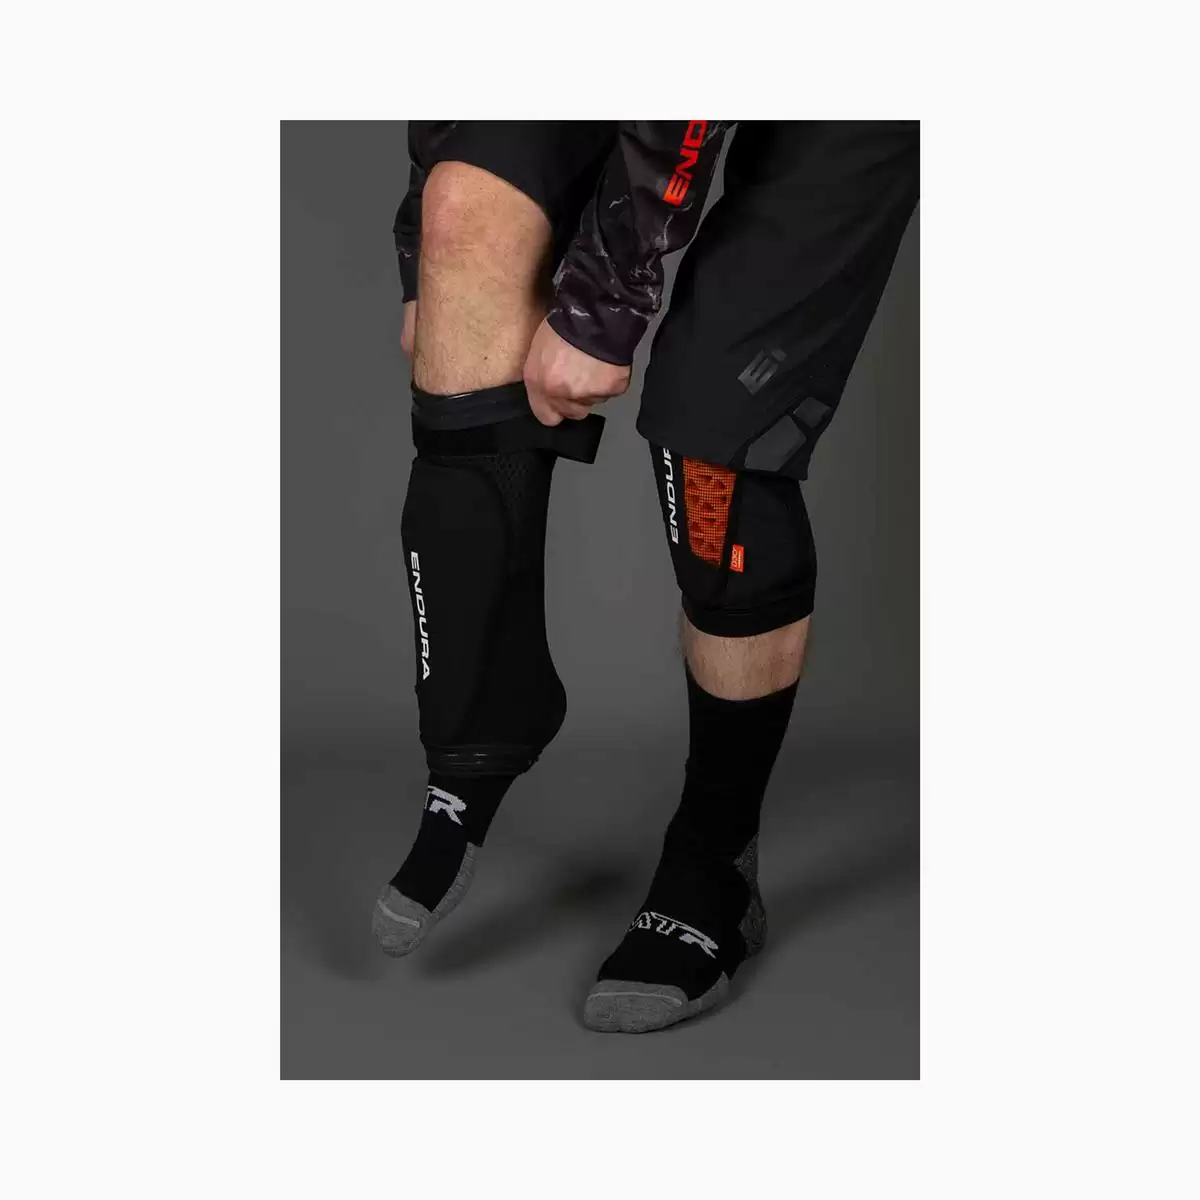 Ginocchiere MT500 Lite Knee pad taglia S/M nero #1